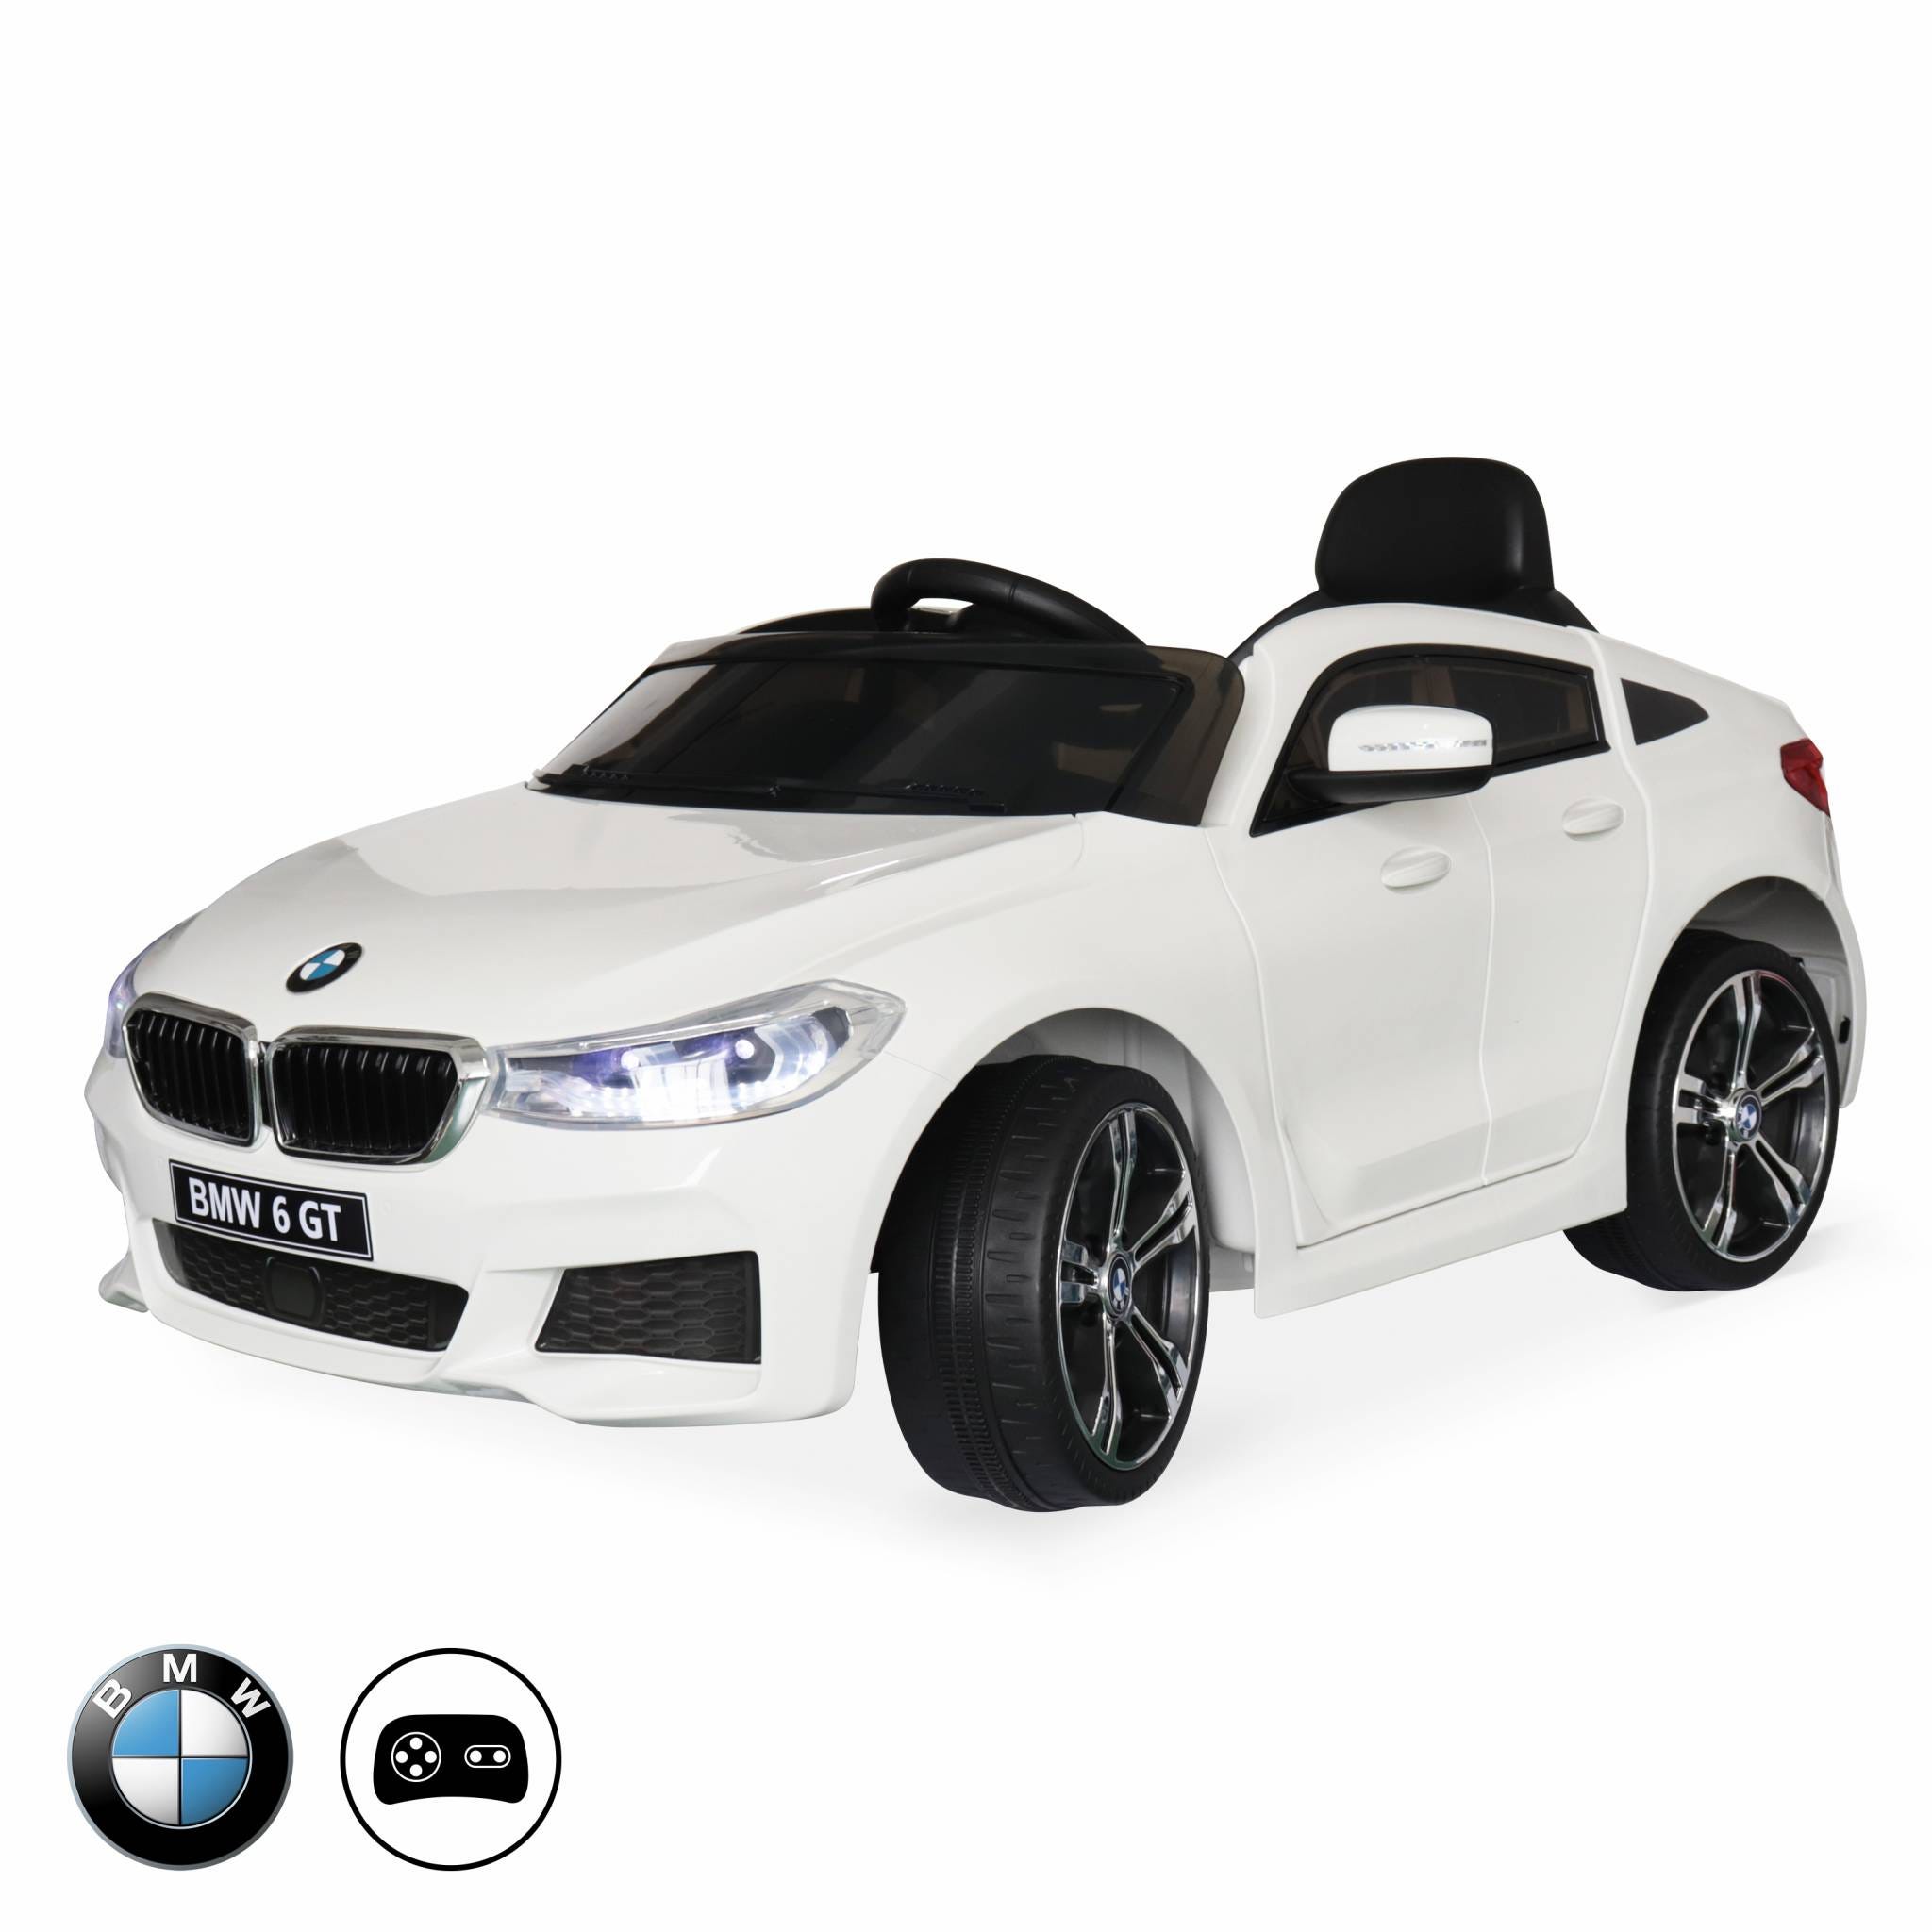 BMW Série 6 GT blanche. voiture électrique pour enfants 12V 4 Ah